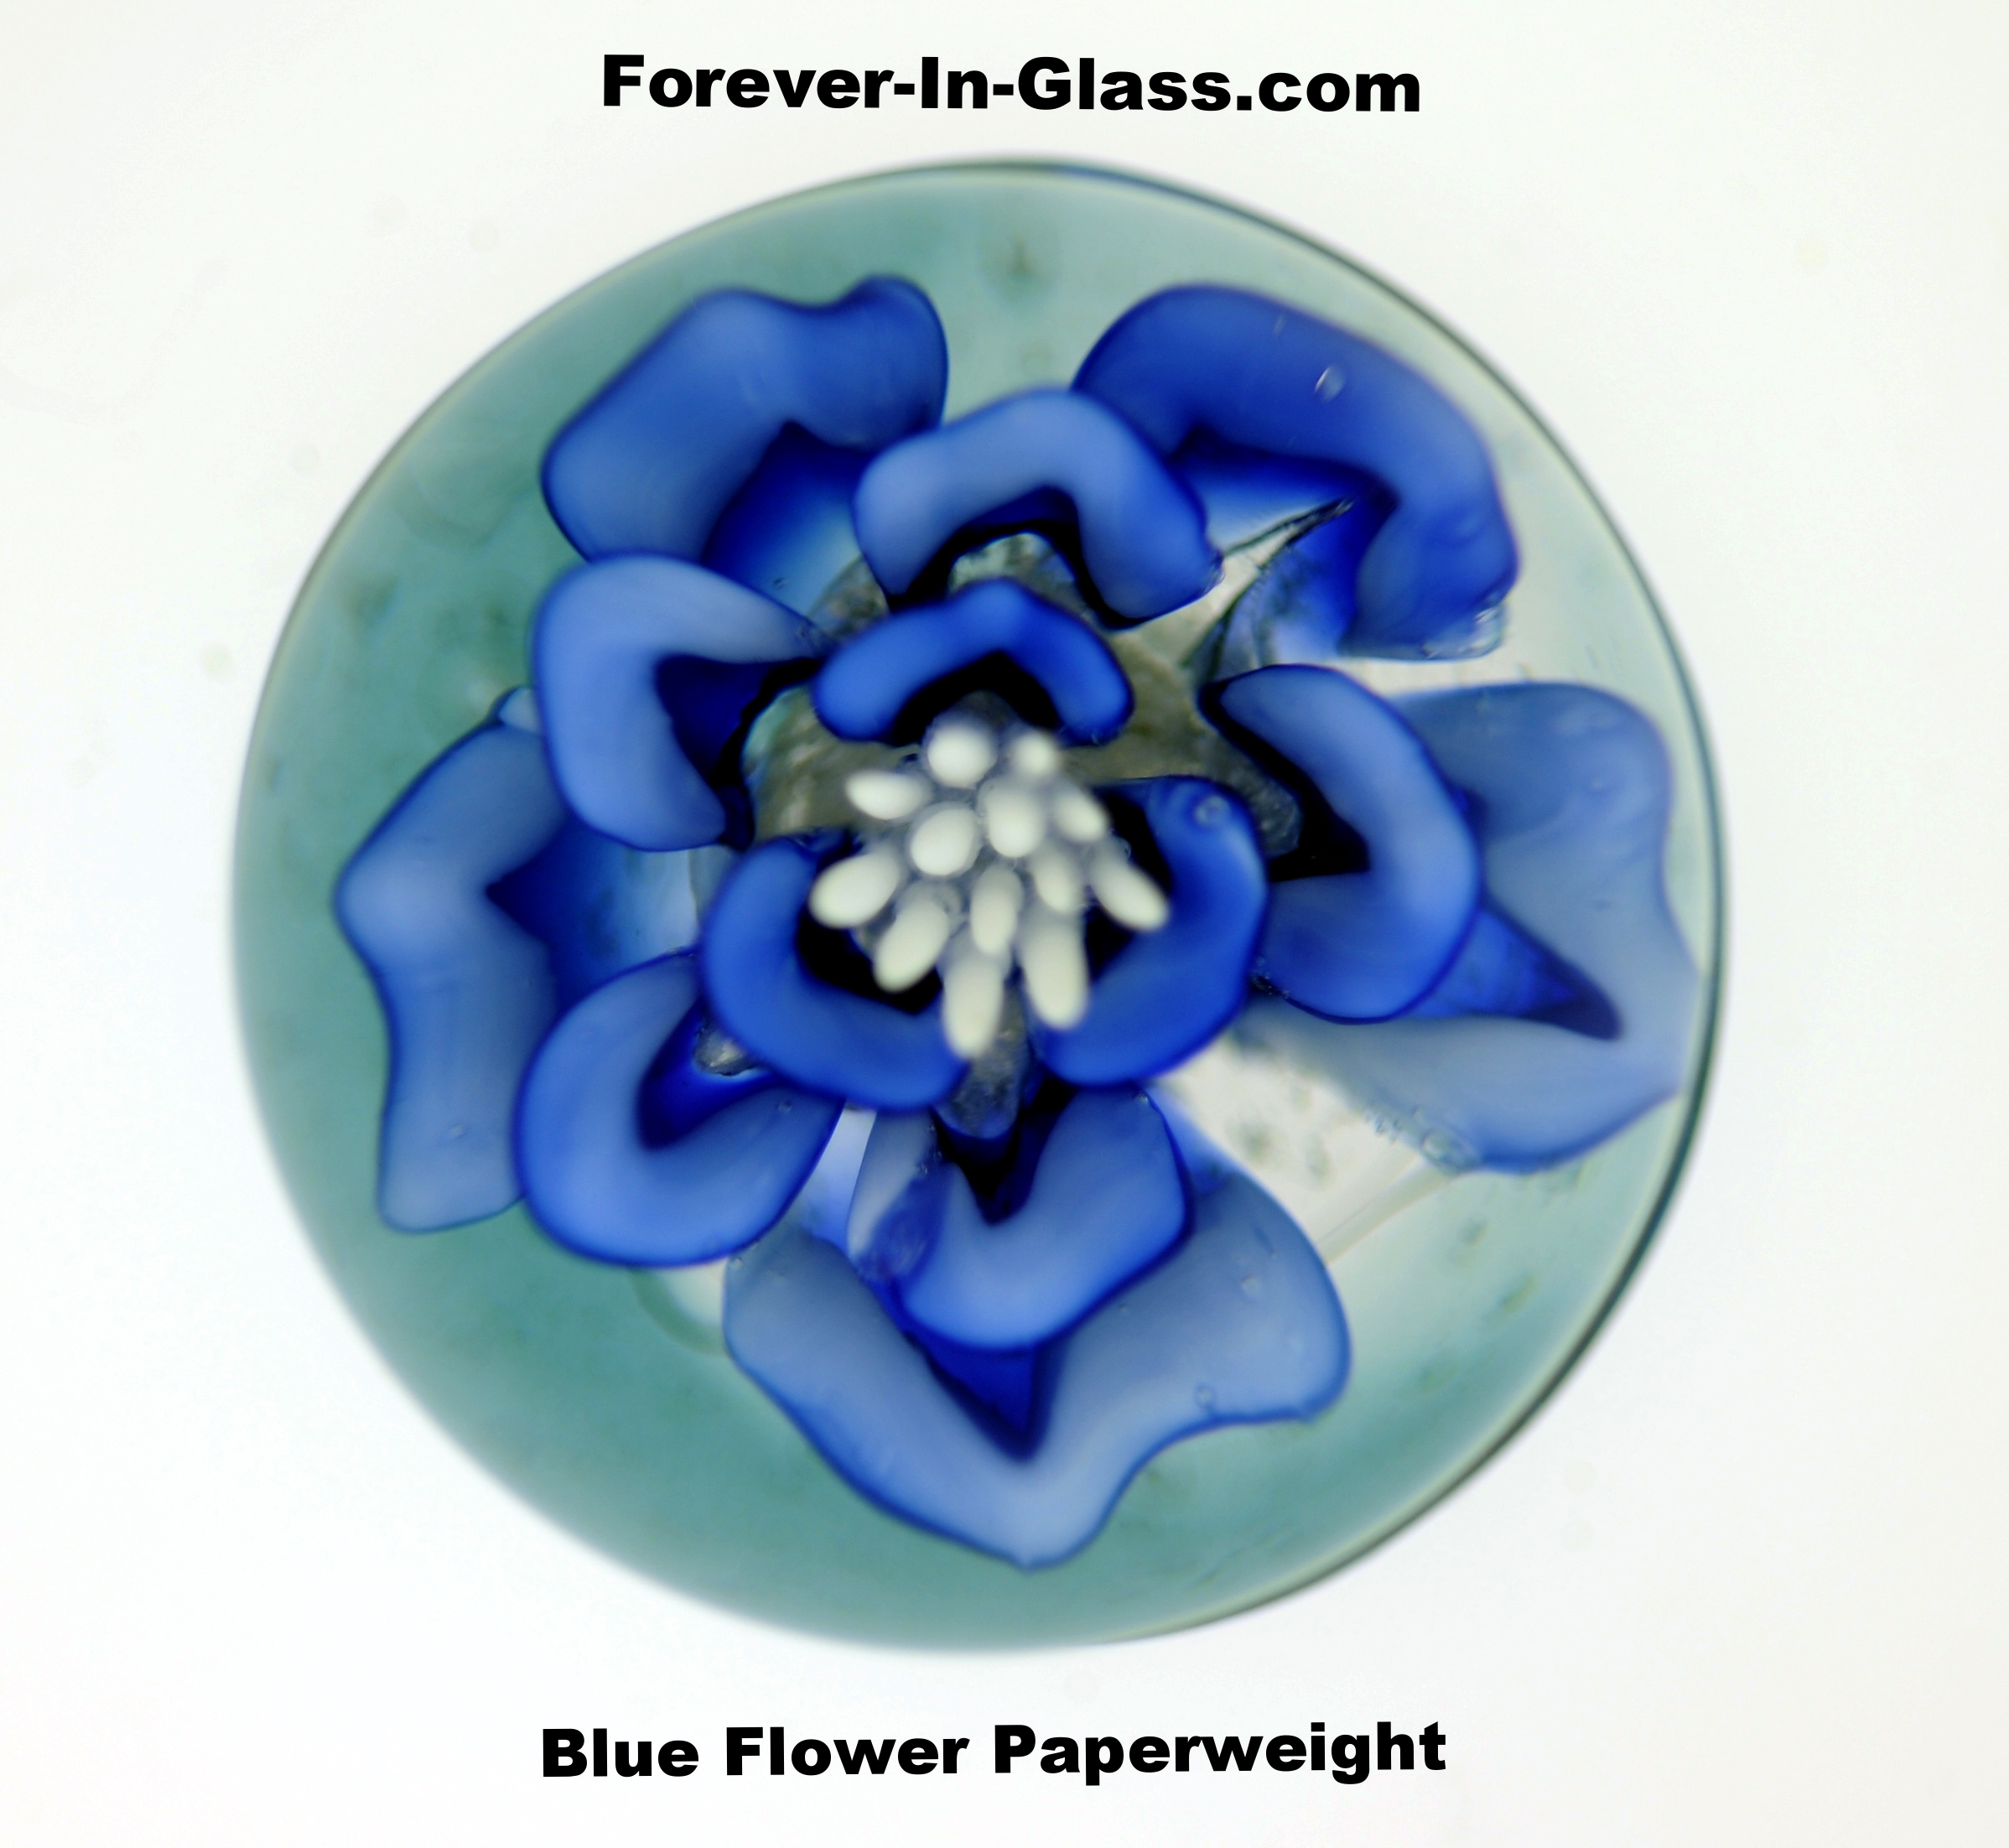 Blue Flower Paperweight.JPG